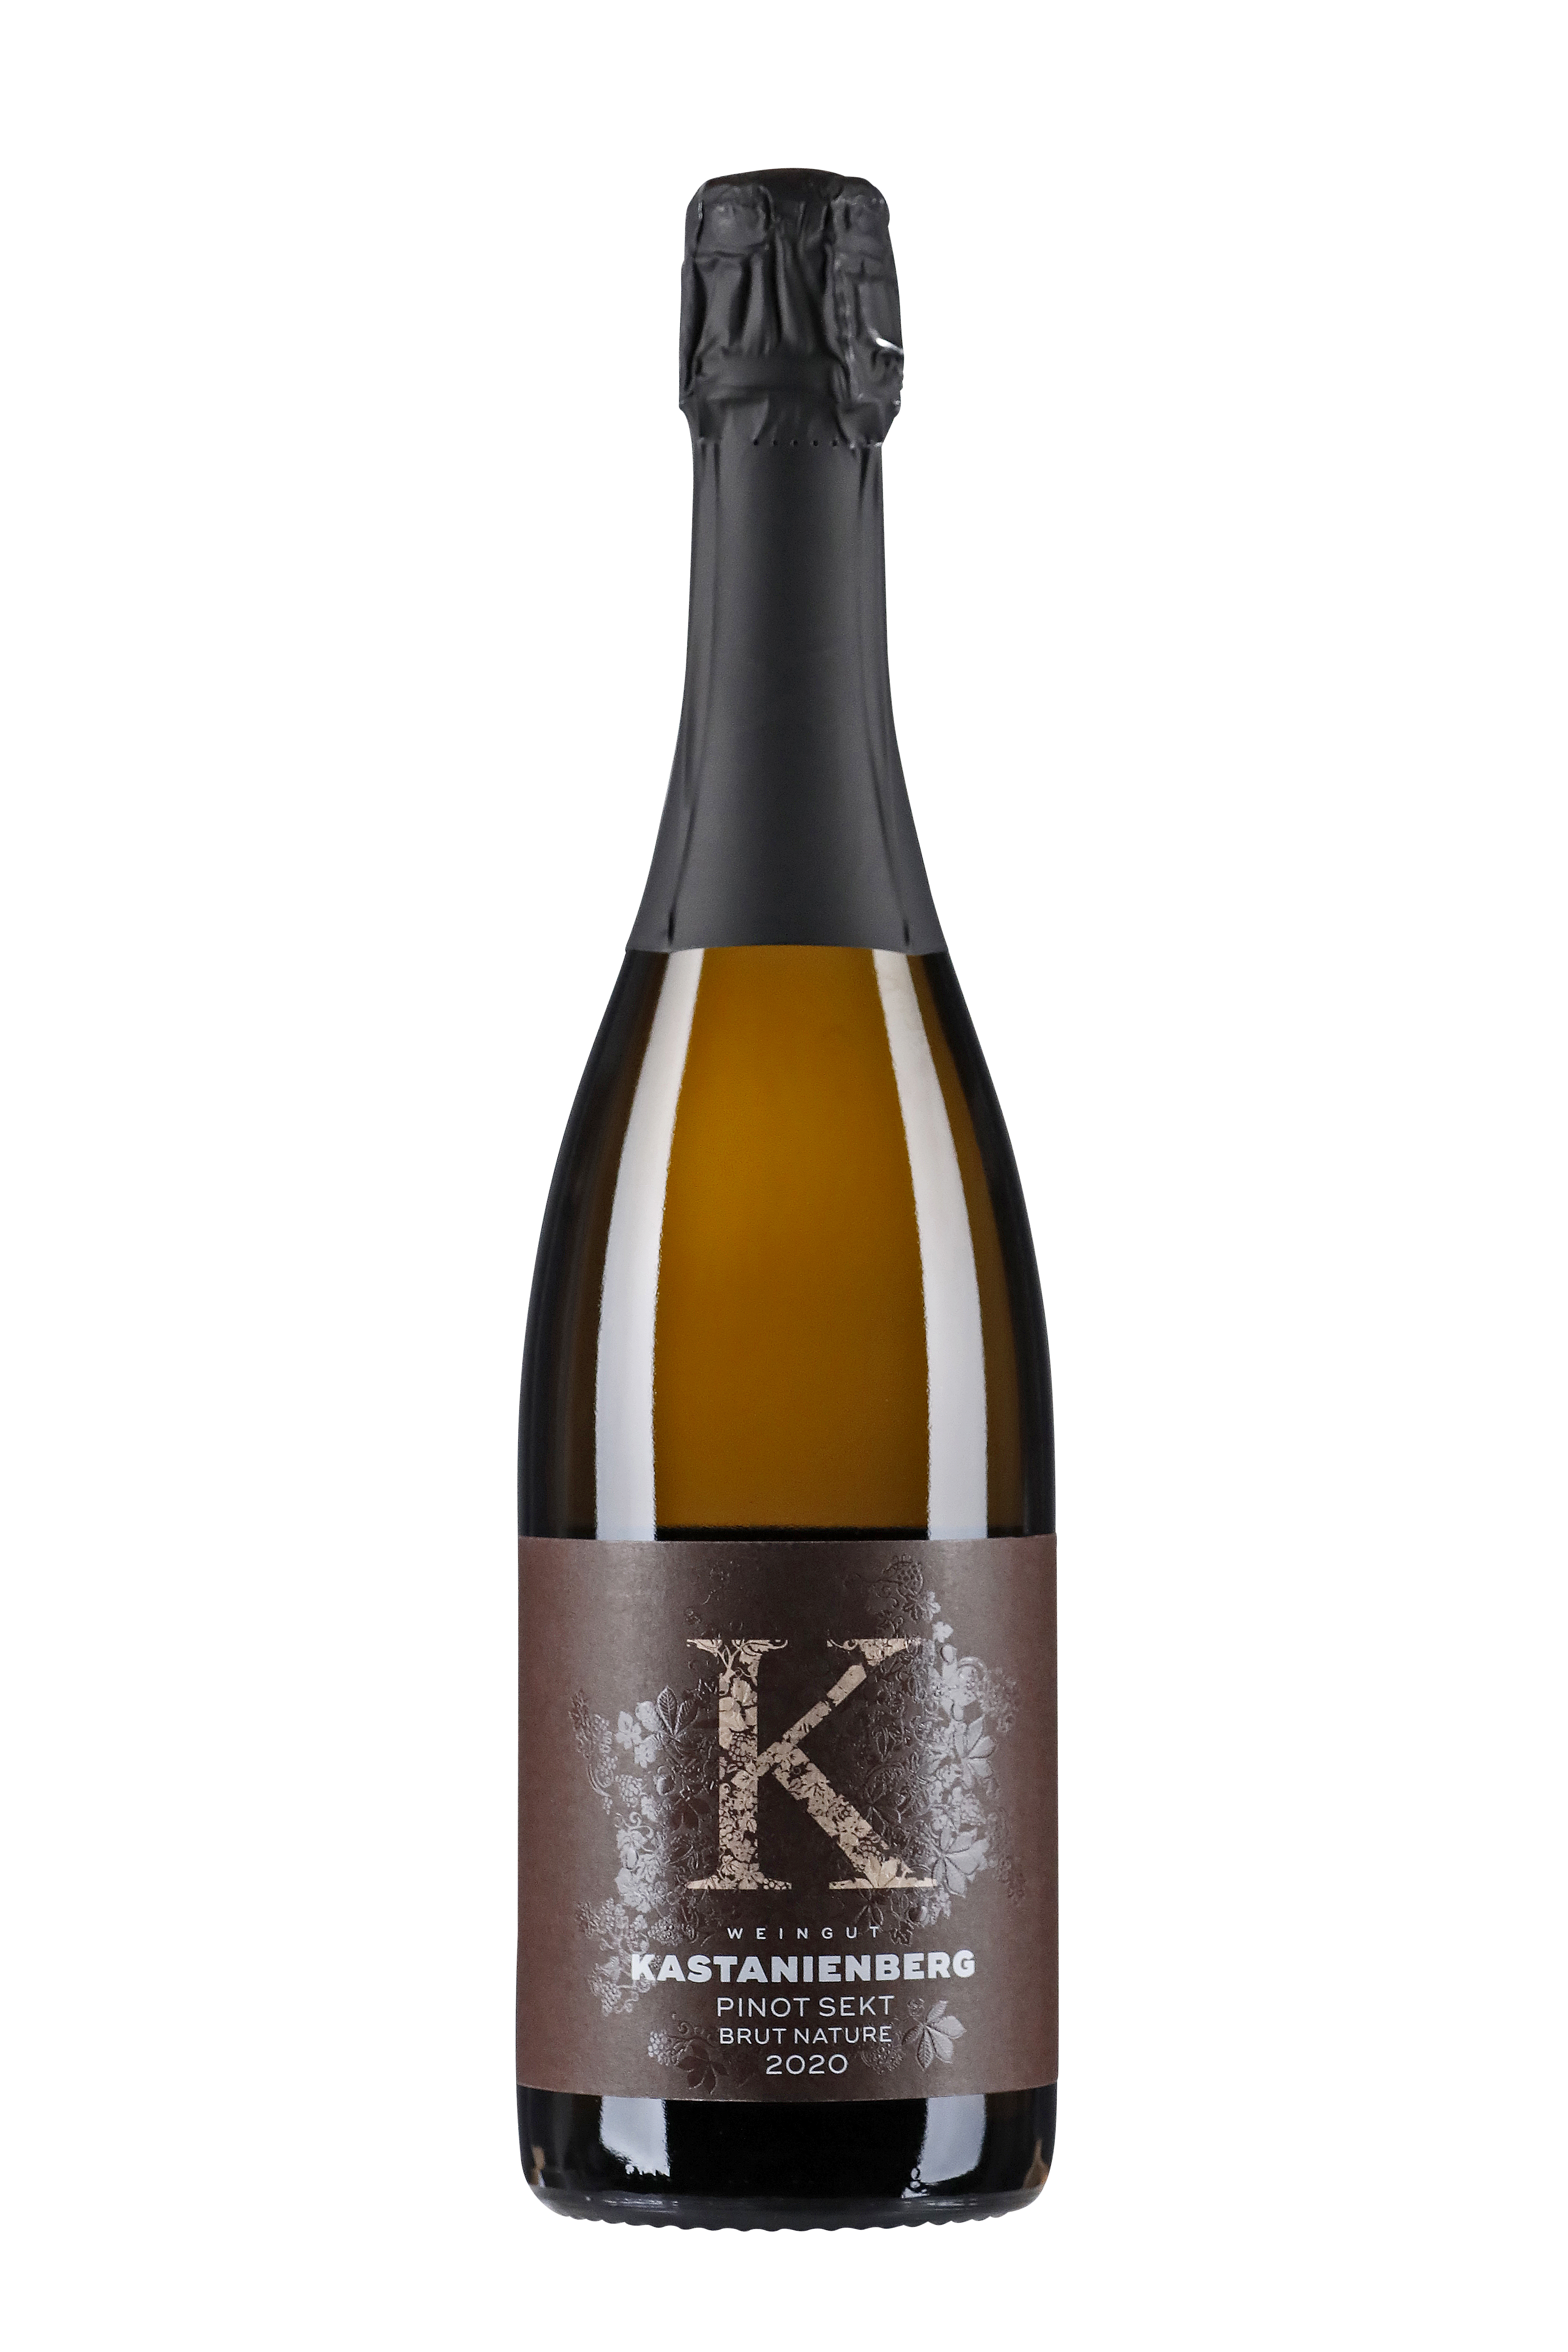 2020 Pinot Sekt brut nature 0,75 L - Weingut Kastanienberg